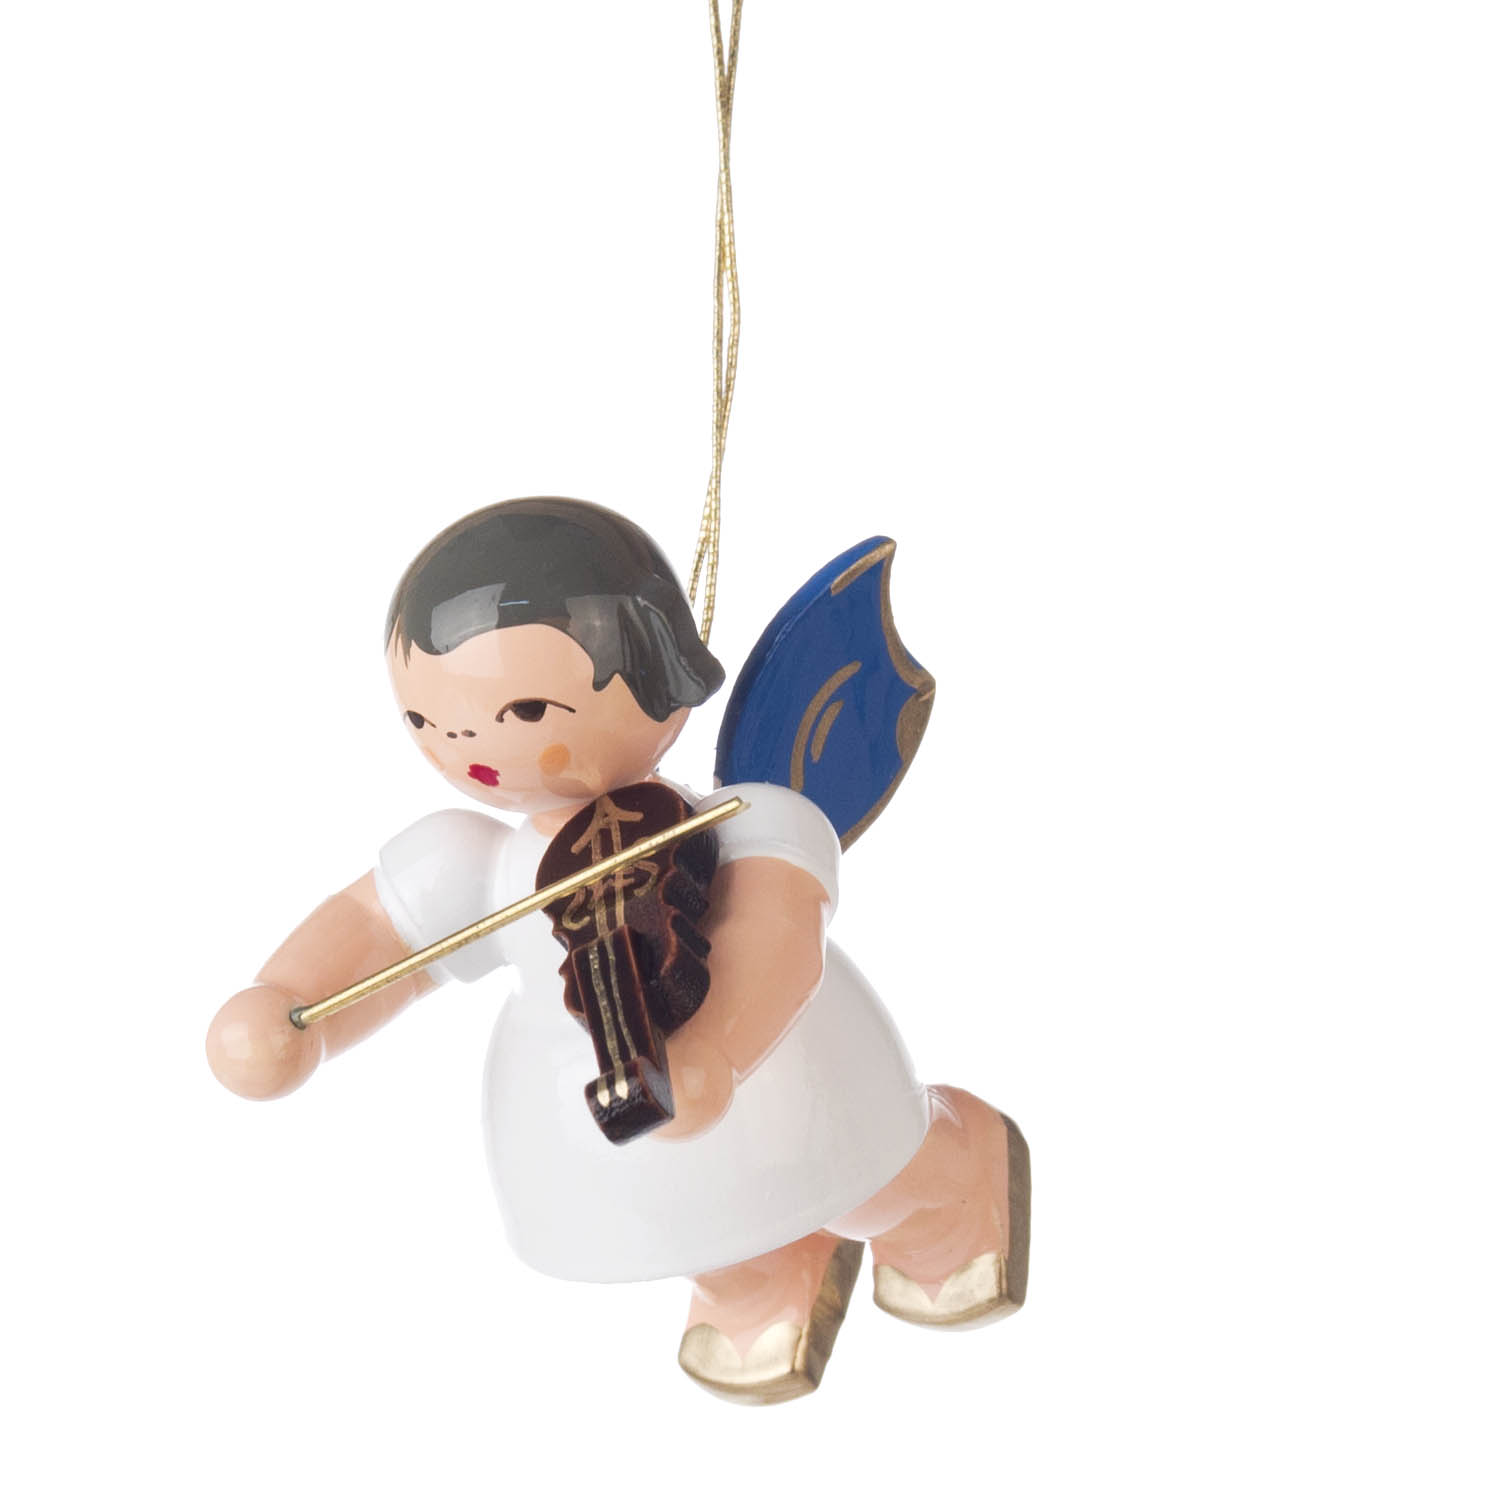 Behang Engel mit Violine, blaue Flügel im Dregeno Online Shop günstig kaufen